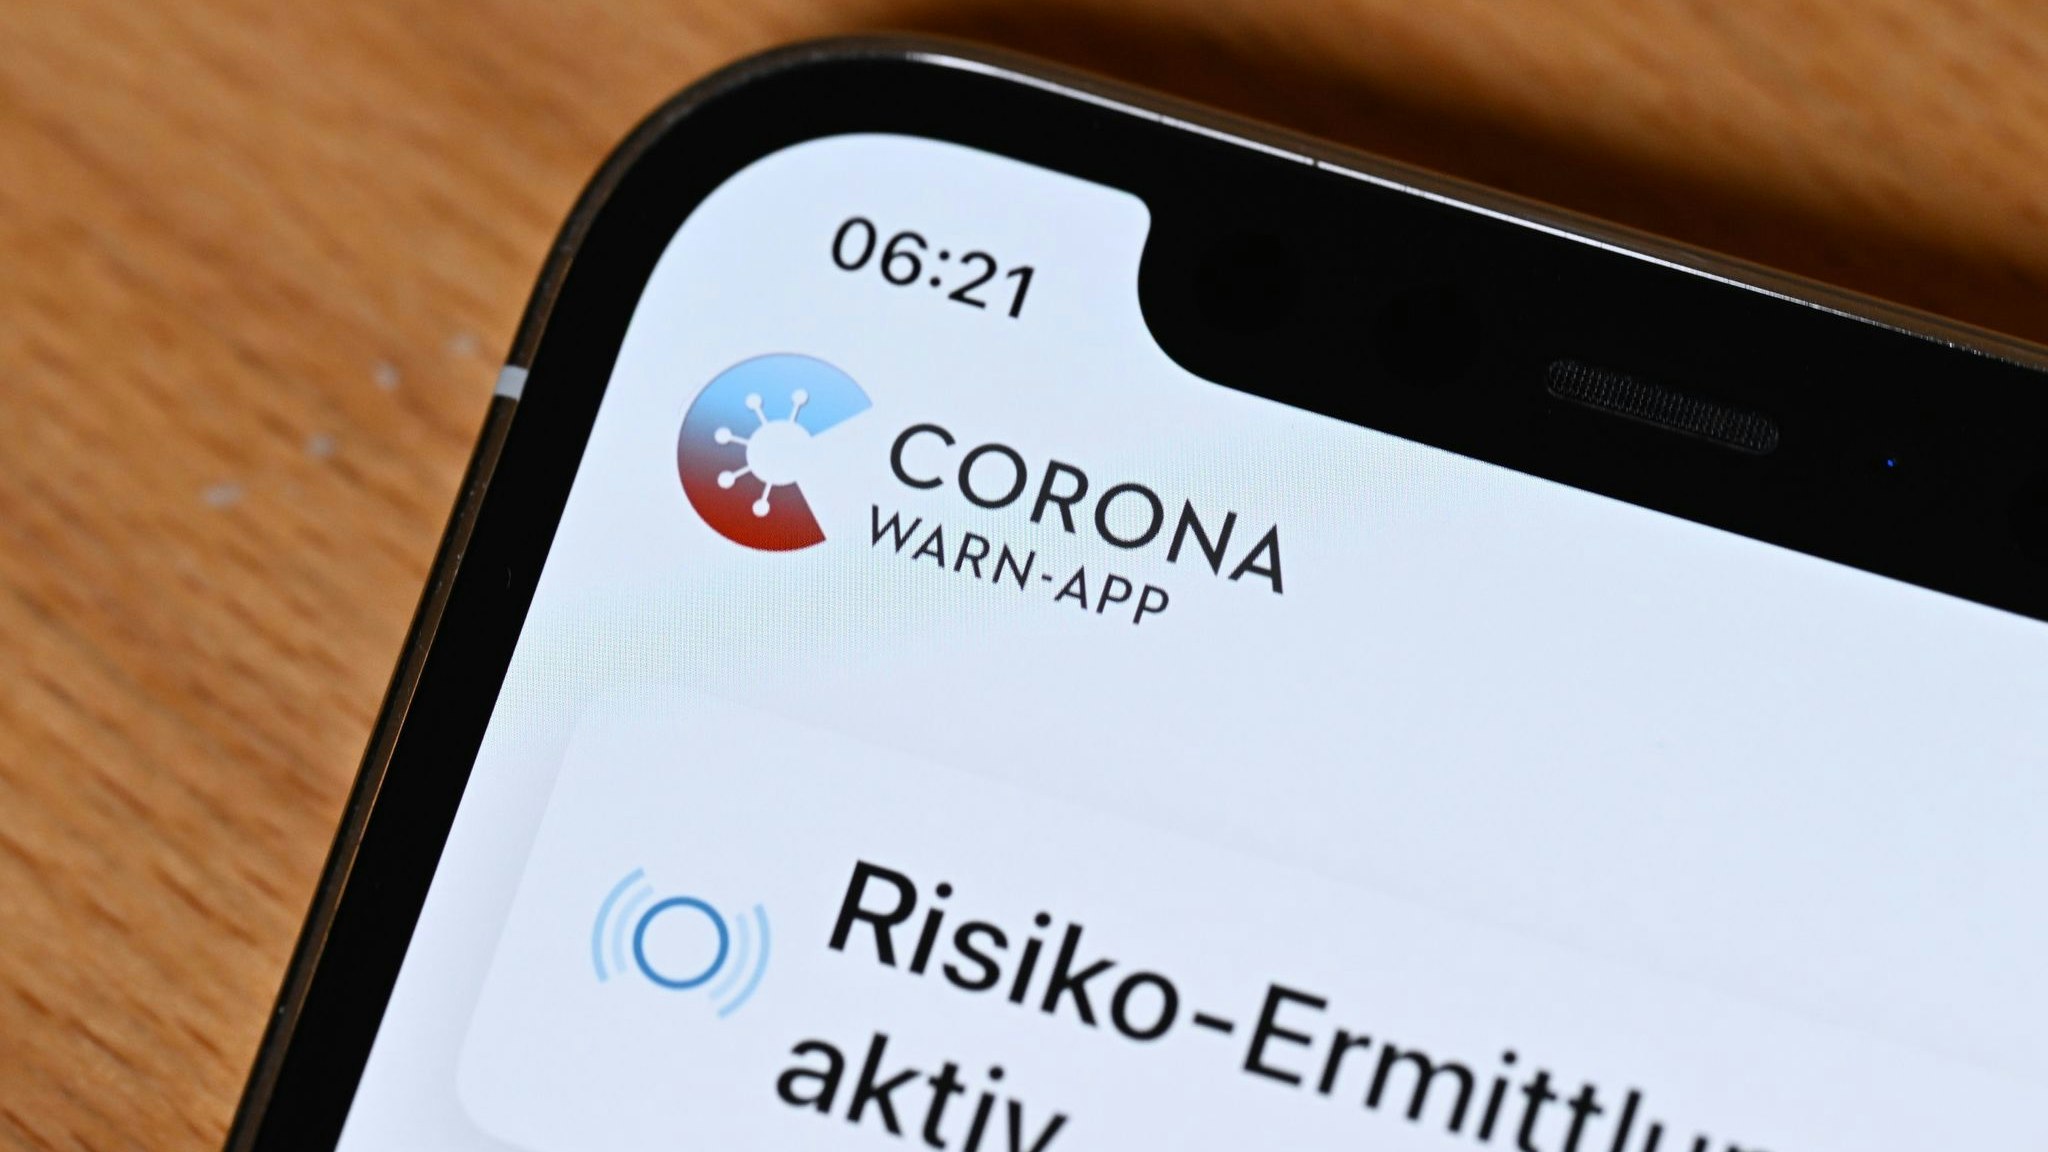 Die offizielle Corona-Warn-App des Bundes gibt es in einer neuen Version mit vielen Neuerungen. Foto: dpa/Weißbrod